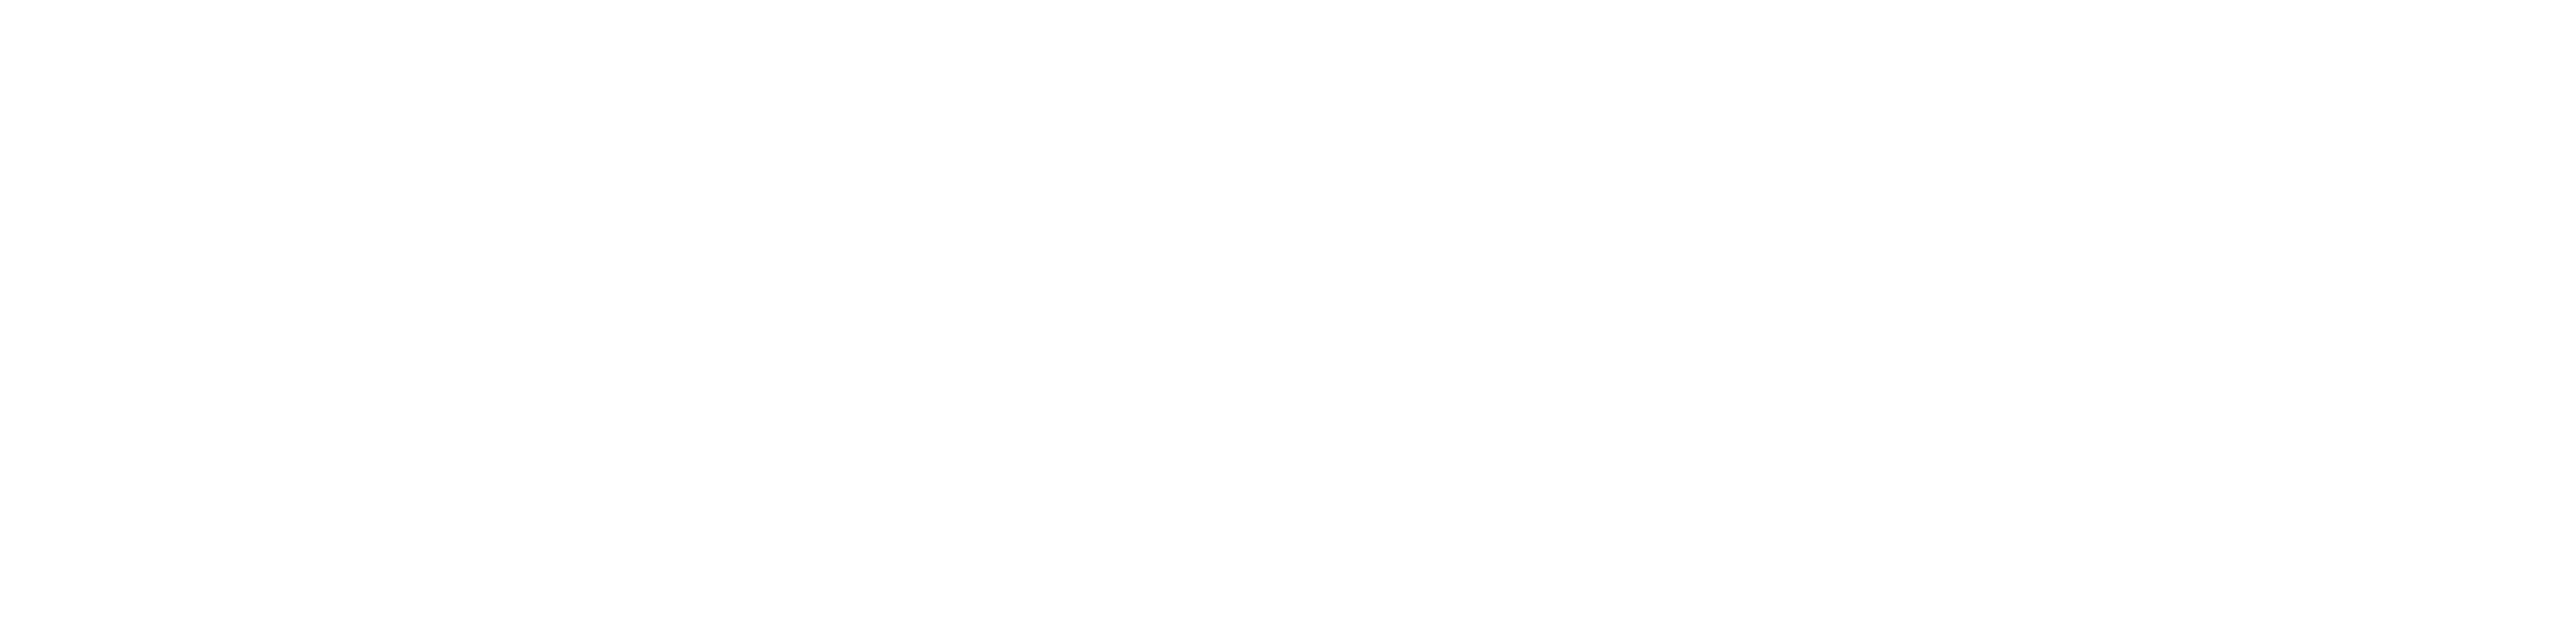 Stiftung Erdheilungsplätze Amazon Smile